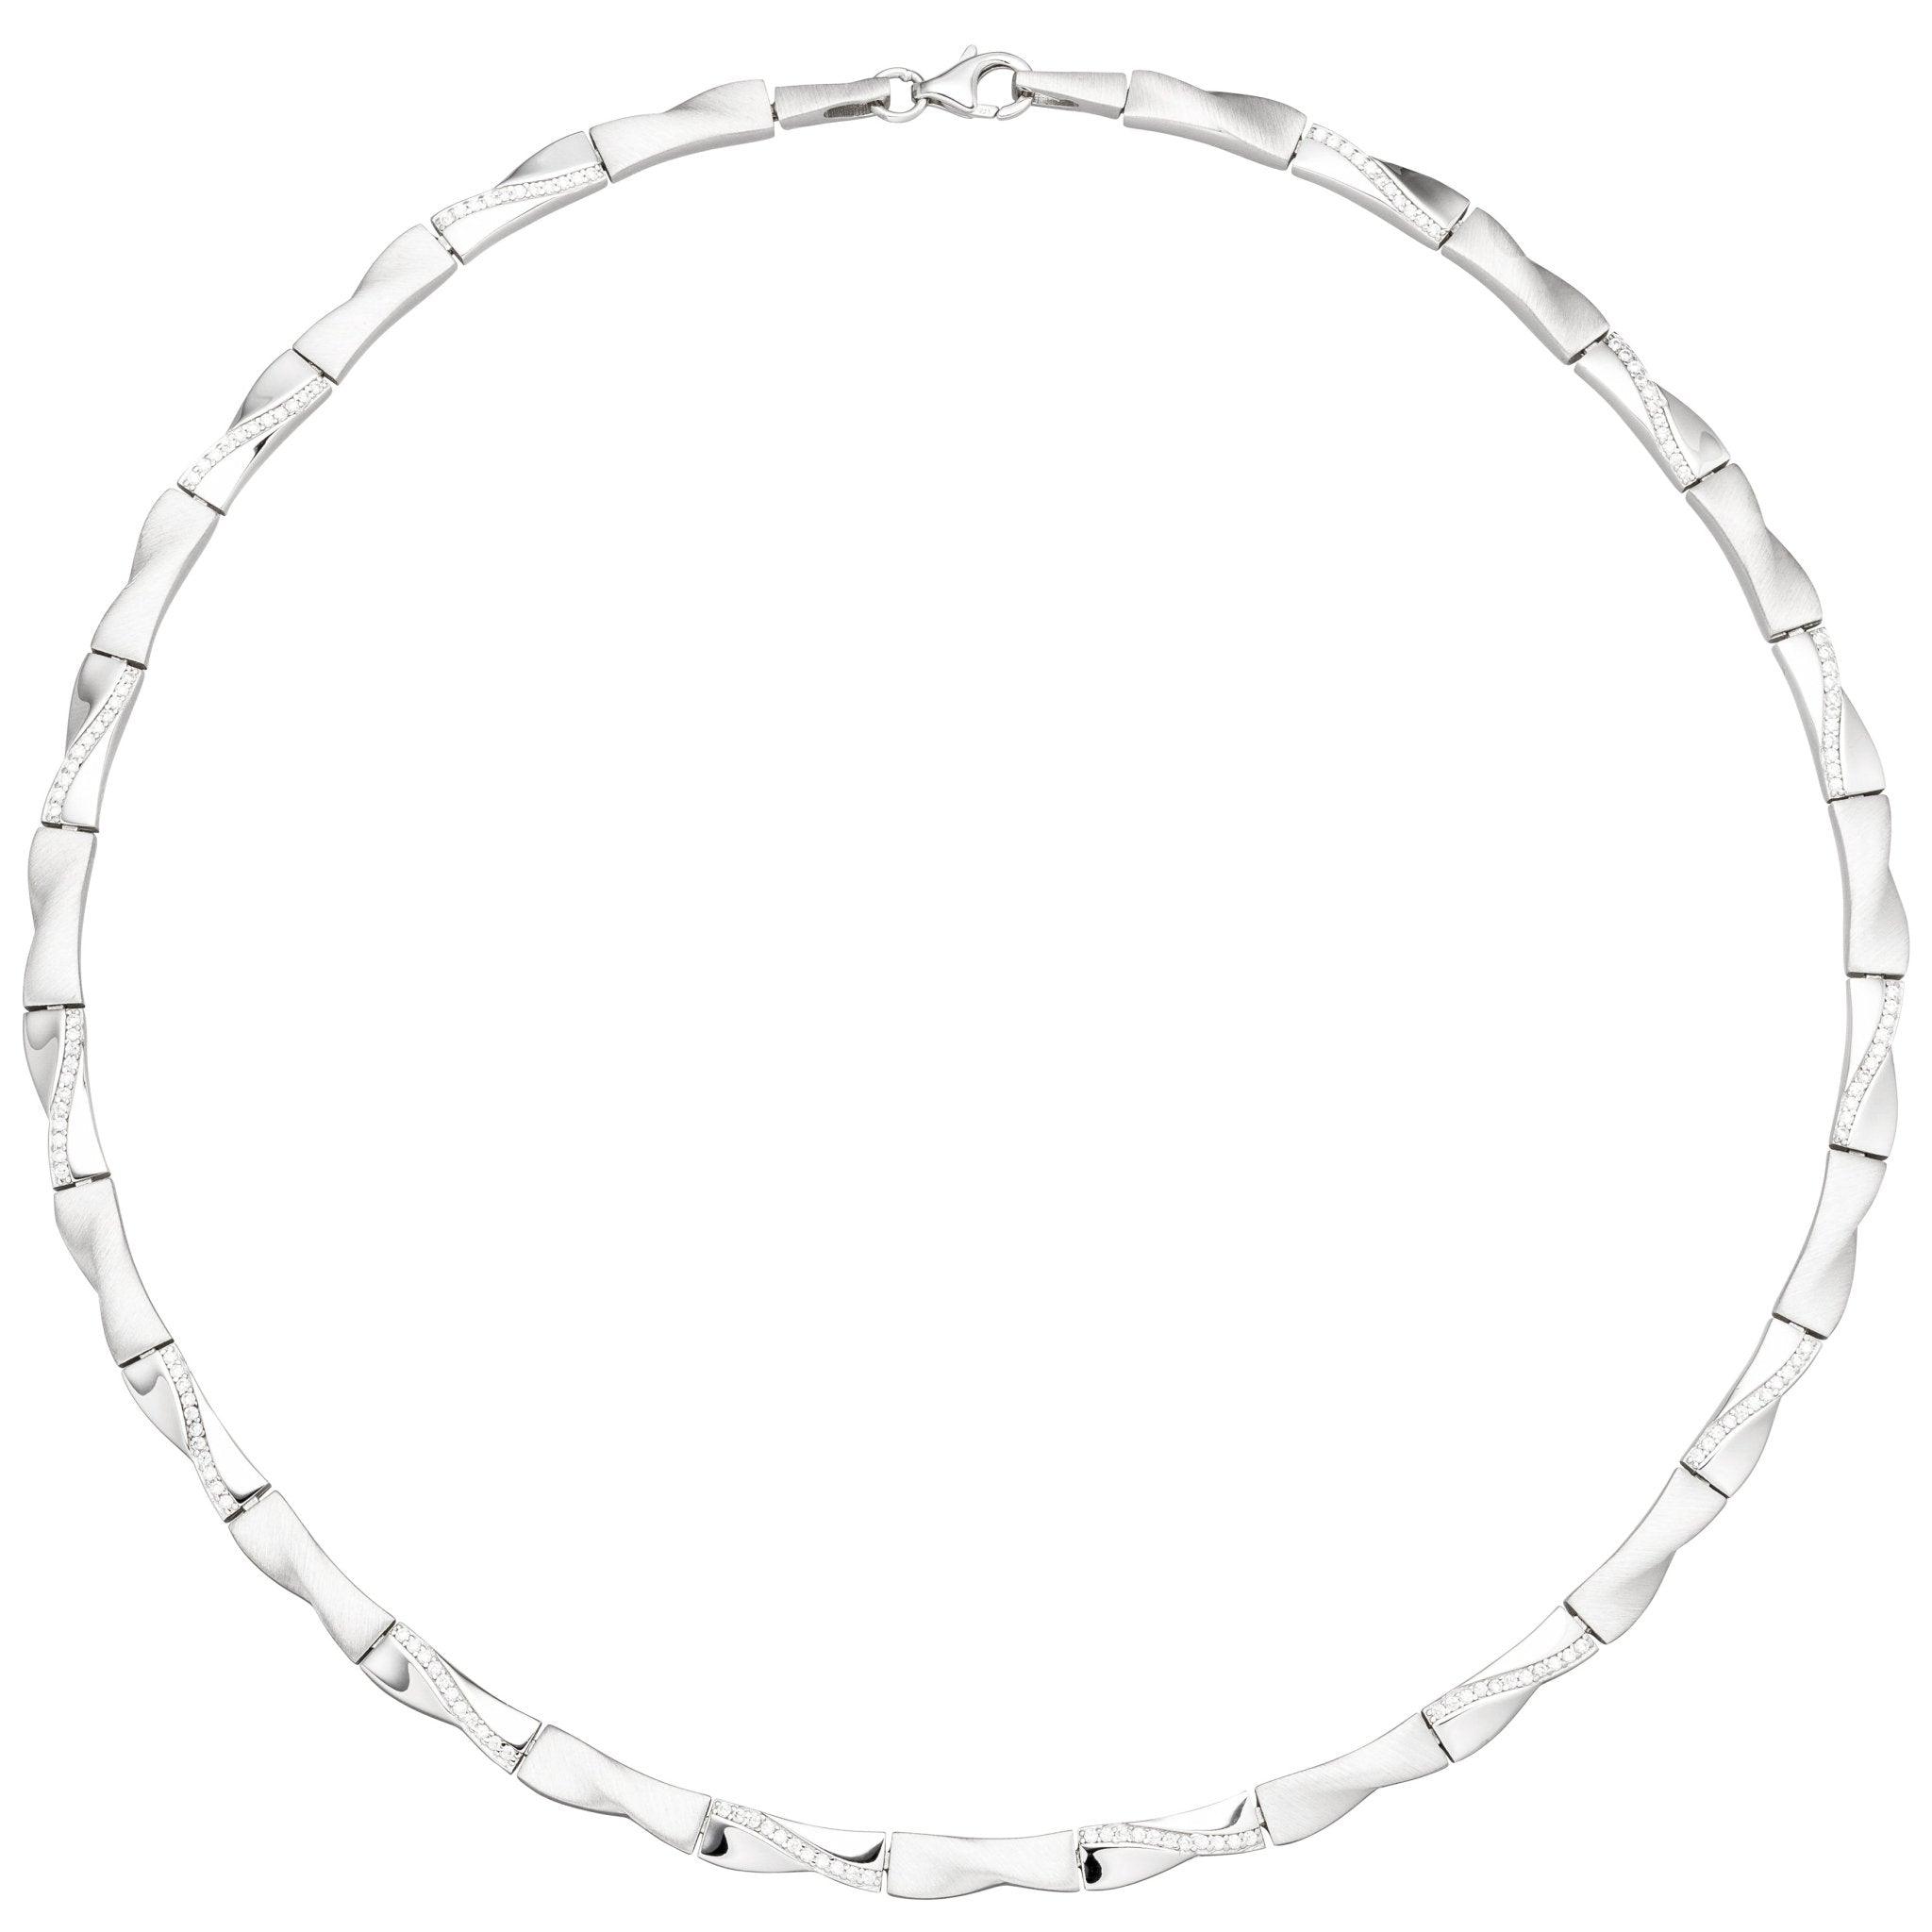 Collier Halskette 925 Silber 45 154 Zirkonia Silberkette-Collier Kette cm